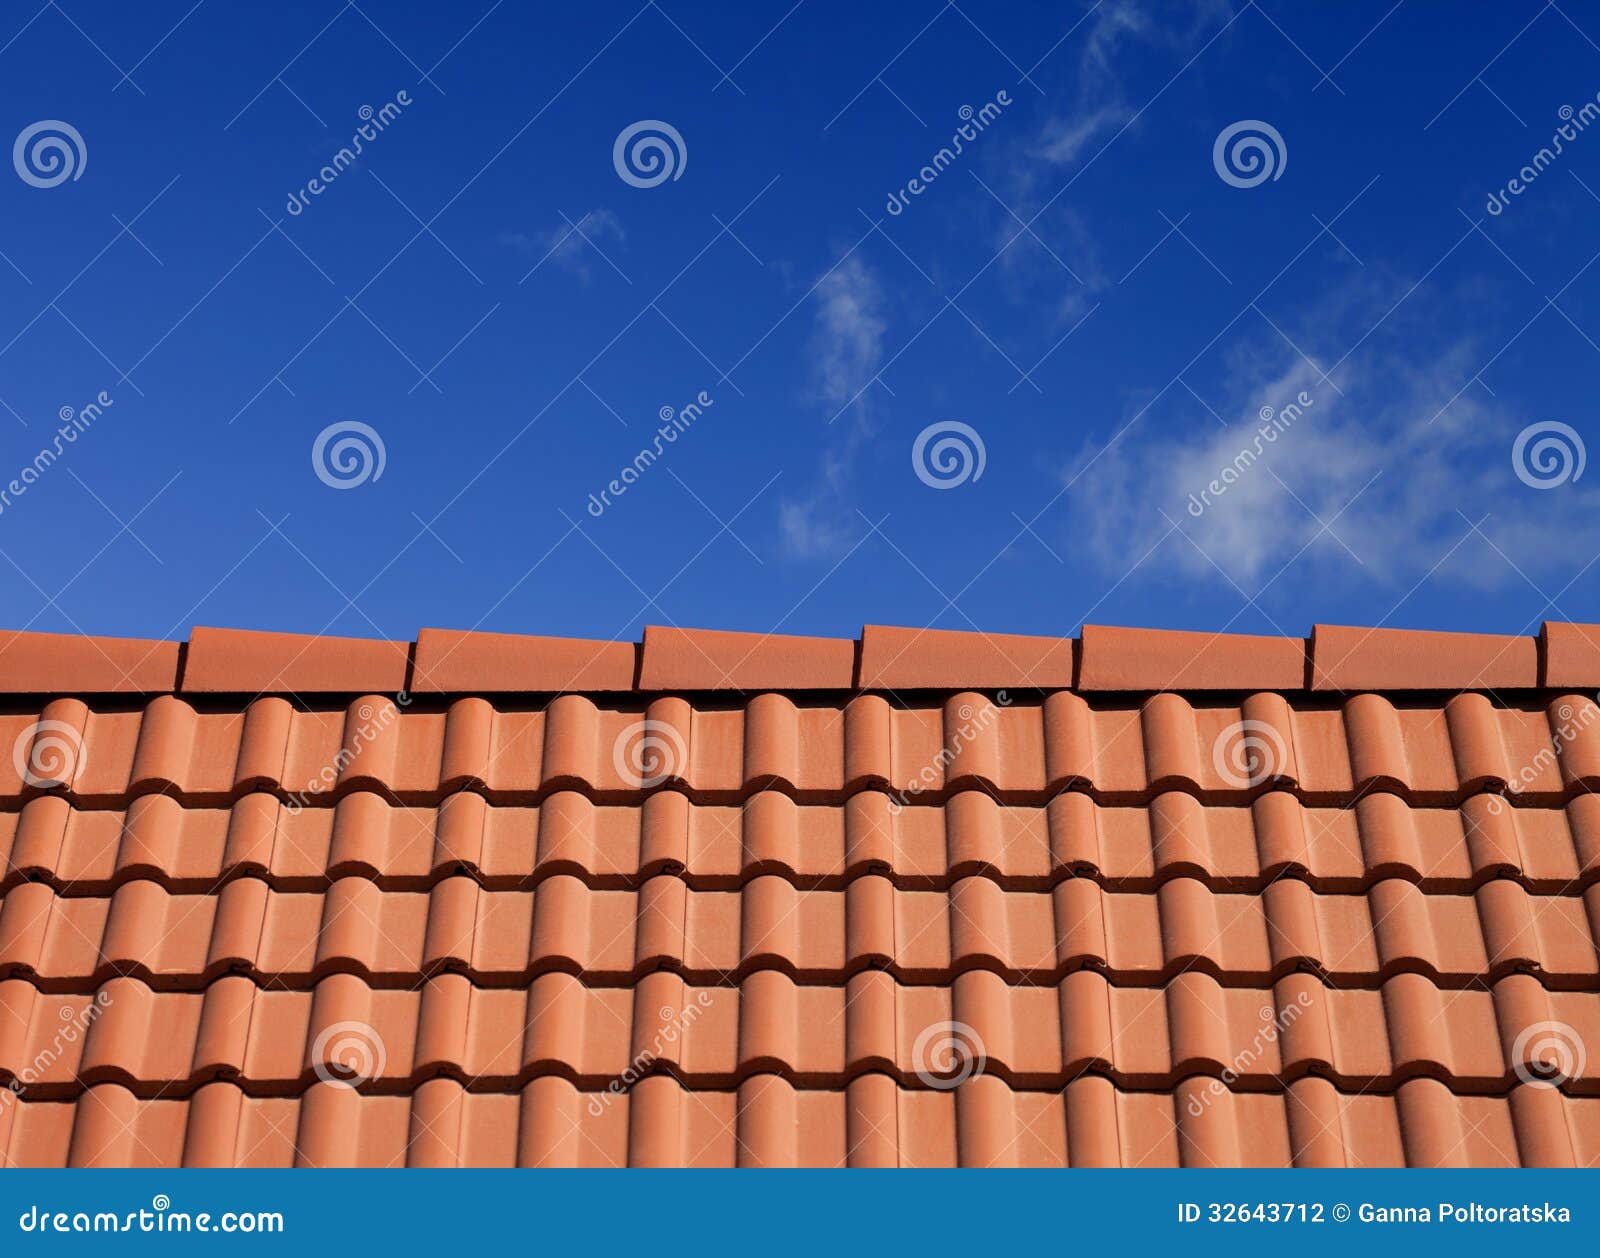 Dachplatten gegen blauen Himmel